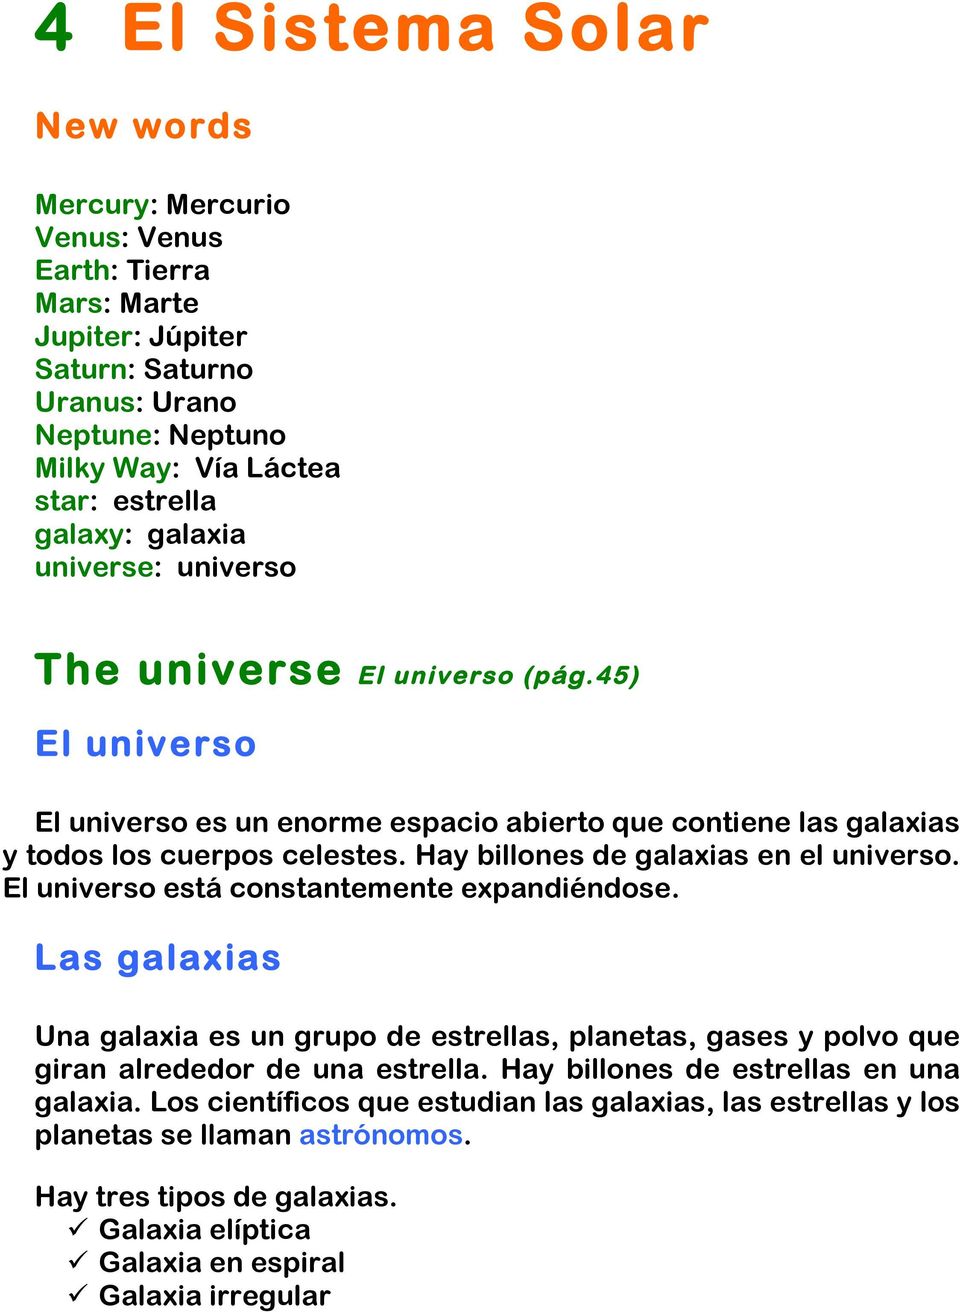 Hay billones de galaxias en el universo. El universo está constantemente expandiéndose.